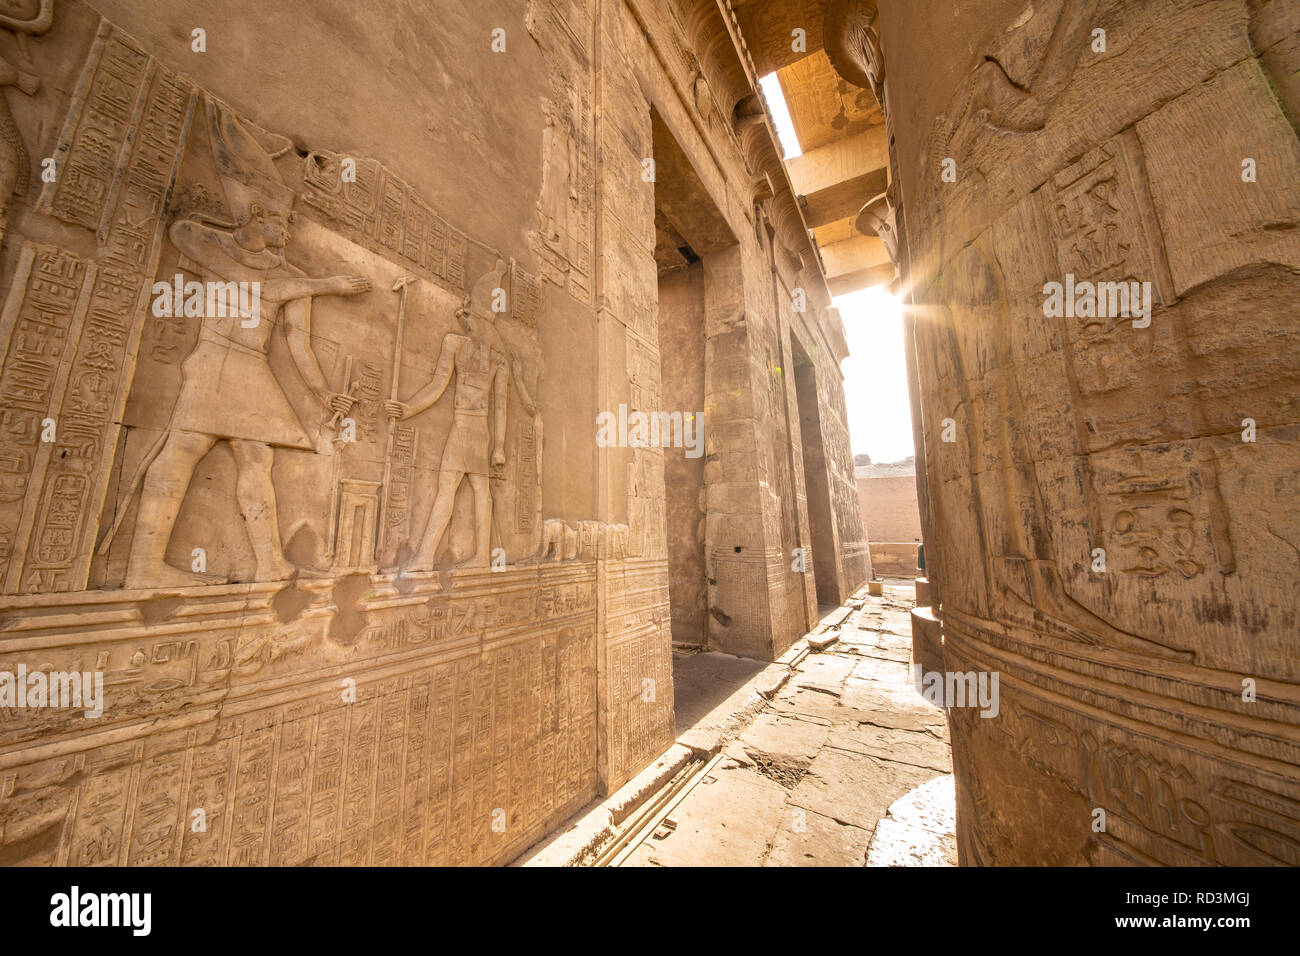 Eingang zum Tempel von Kom Ombo gebaut von der alten ägyptischen Zivilisation in der Nähe von Theben (Luxor) und Assuan Stockfoto